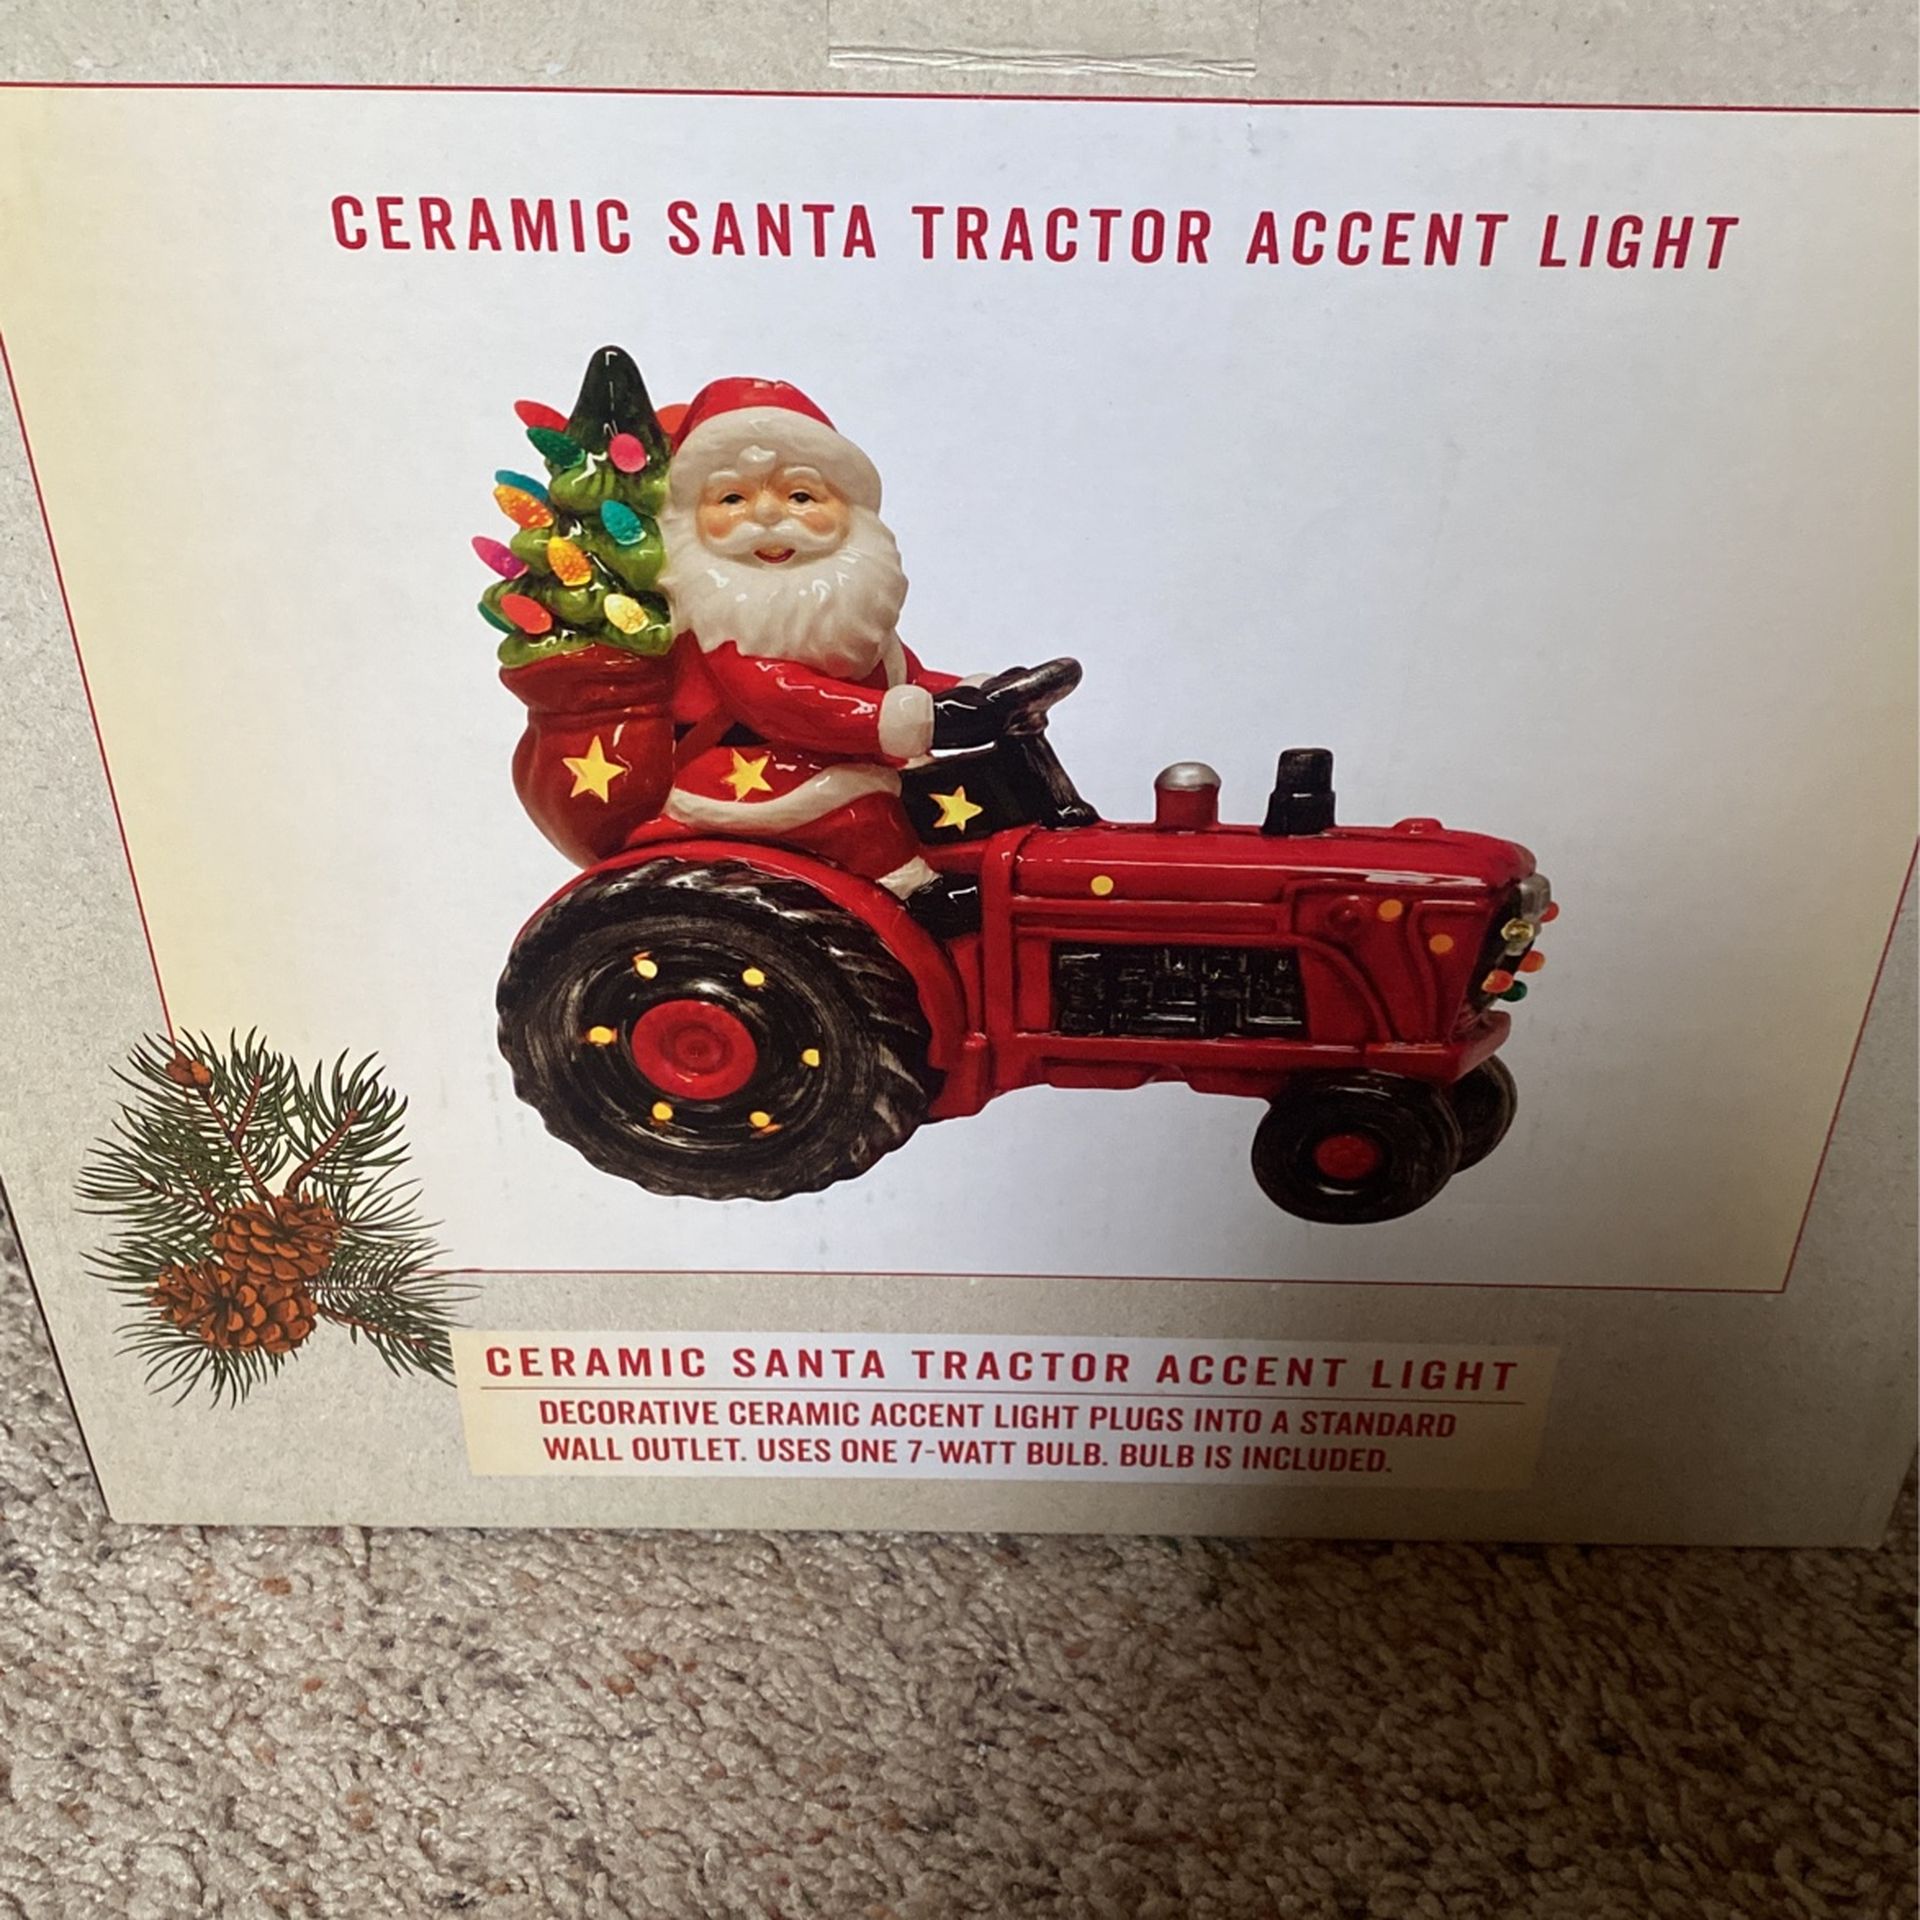 Ceramic Santa Tractor Accent Light